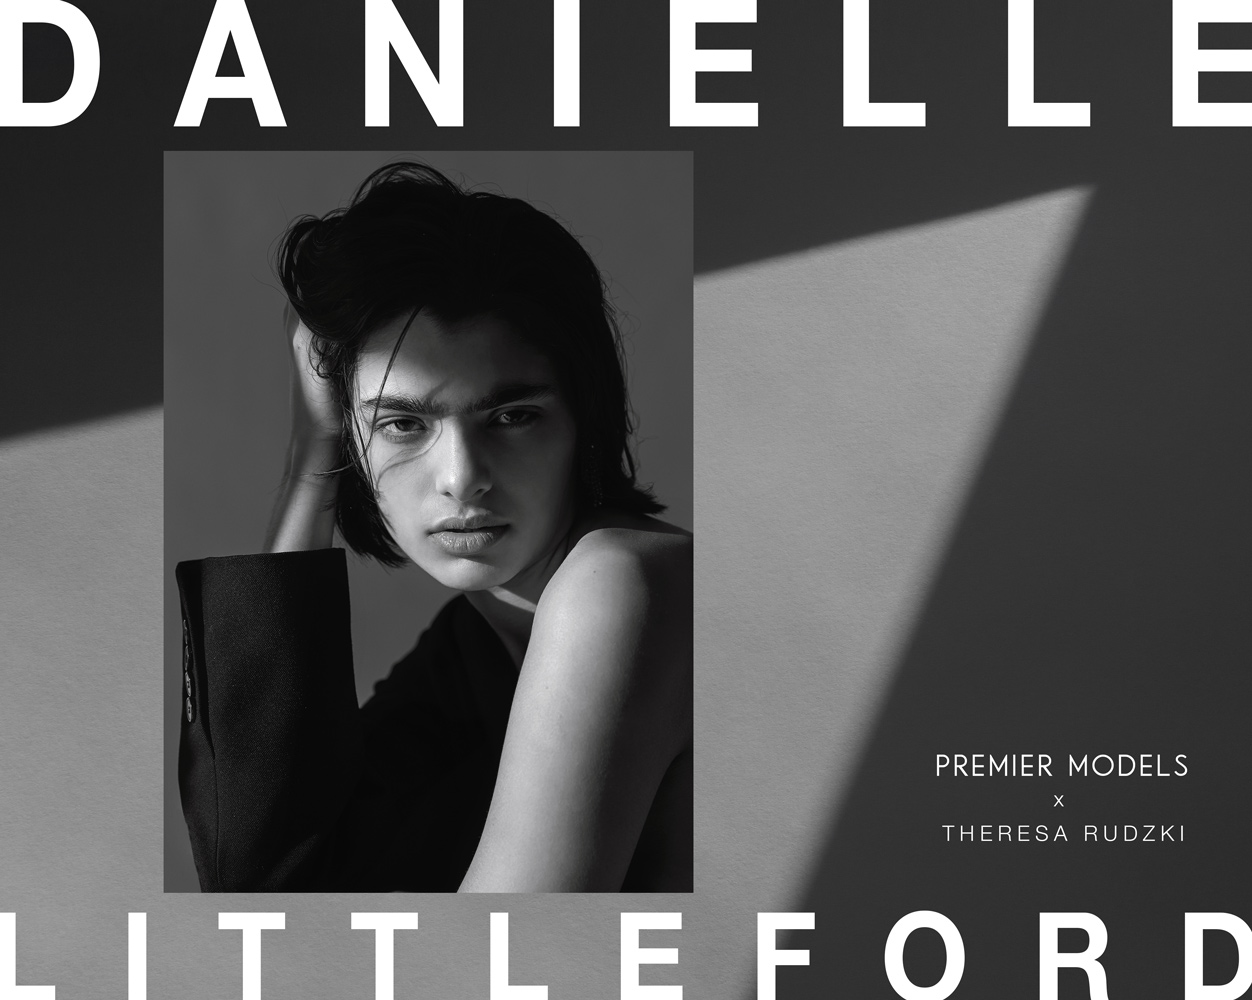 Danielle – Premier Models